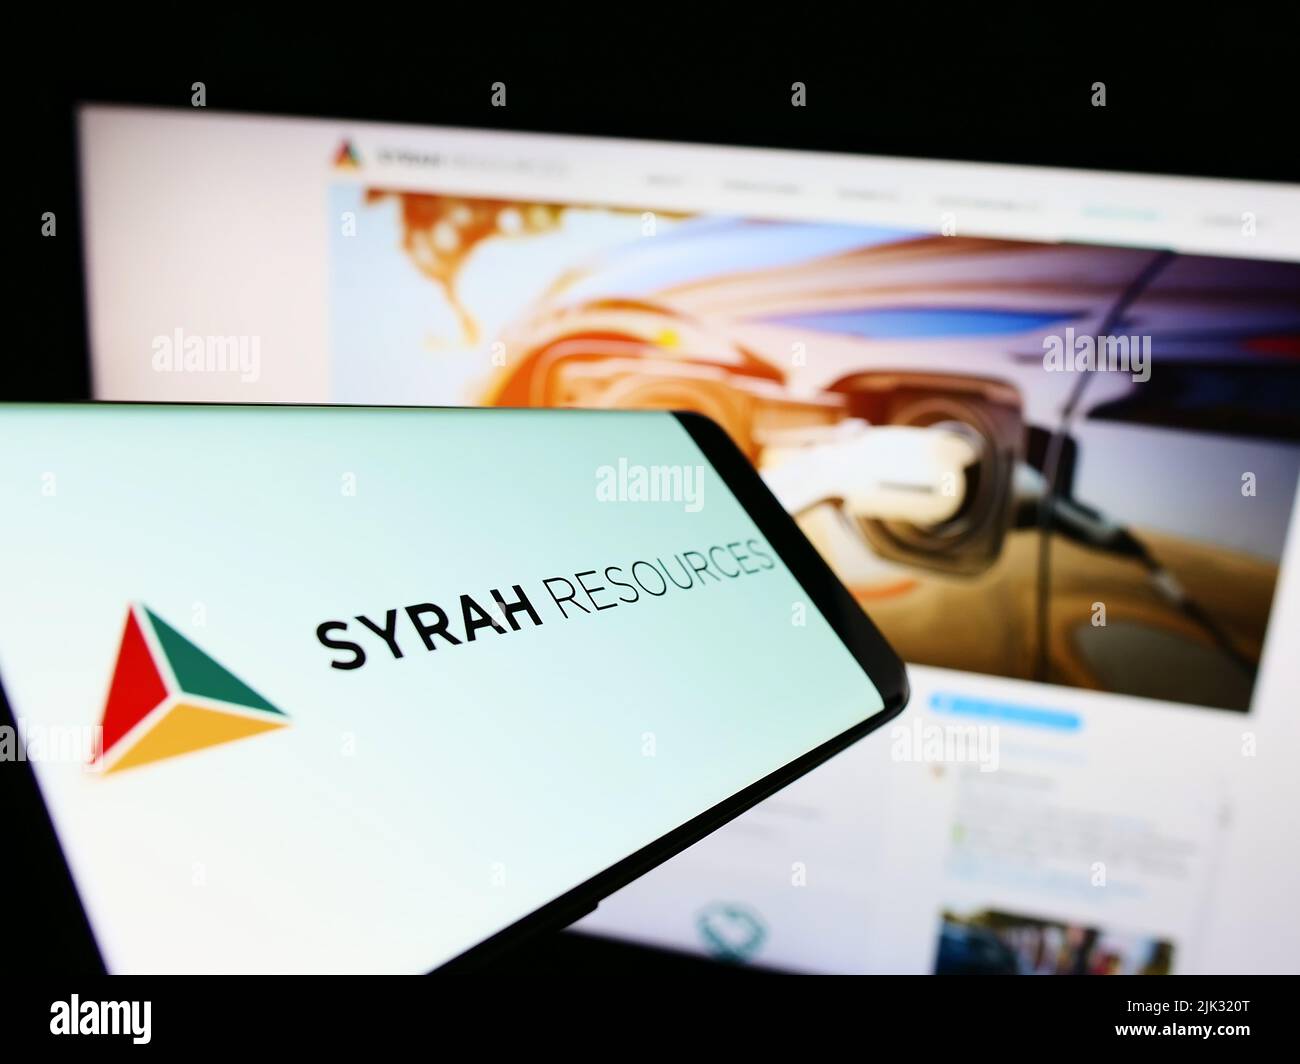 Telefono cellulare con logo della società australiana Syrah Resources Limited sullo schermo di fronte al sito web. Concentratevi sul centro-destra del display del telefono. Foto Stock